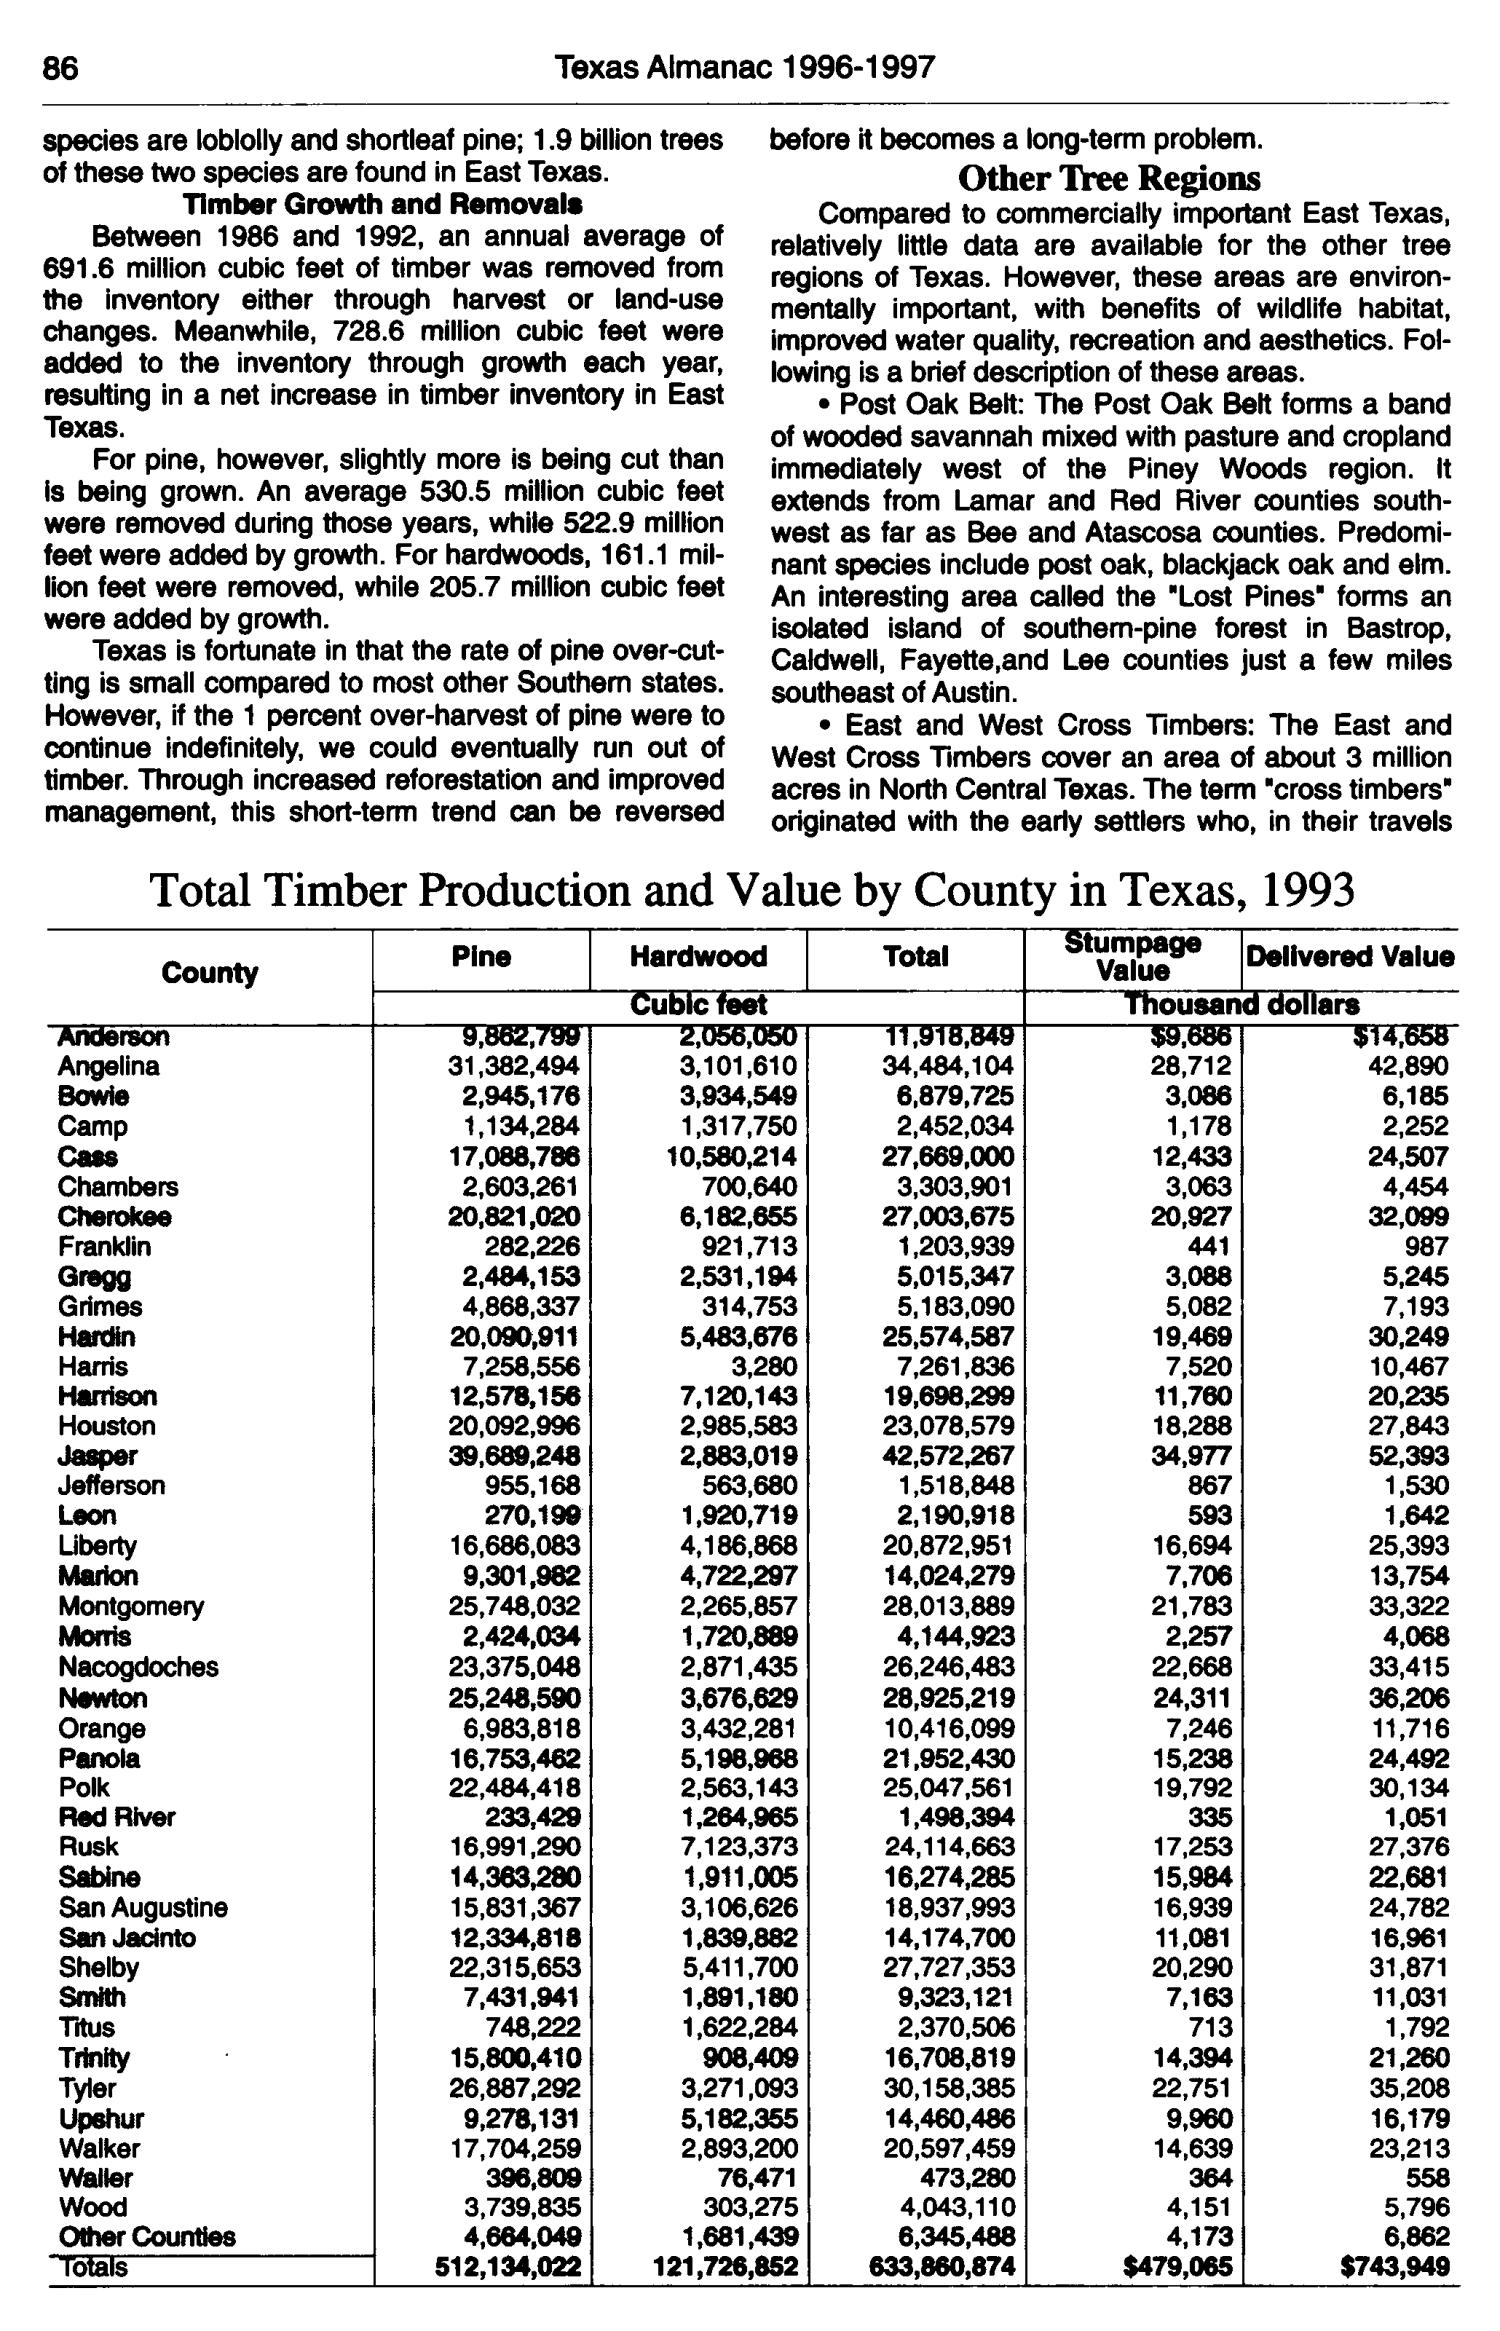 Texas Almanac, 1996-1997
                                                
                                                    86
                                                